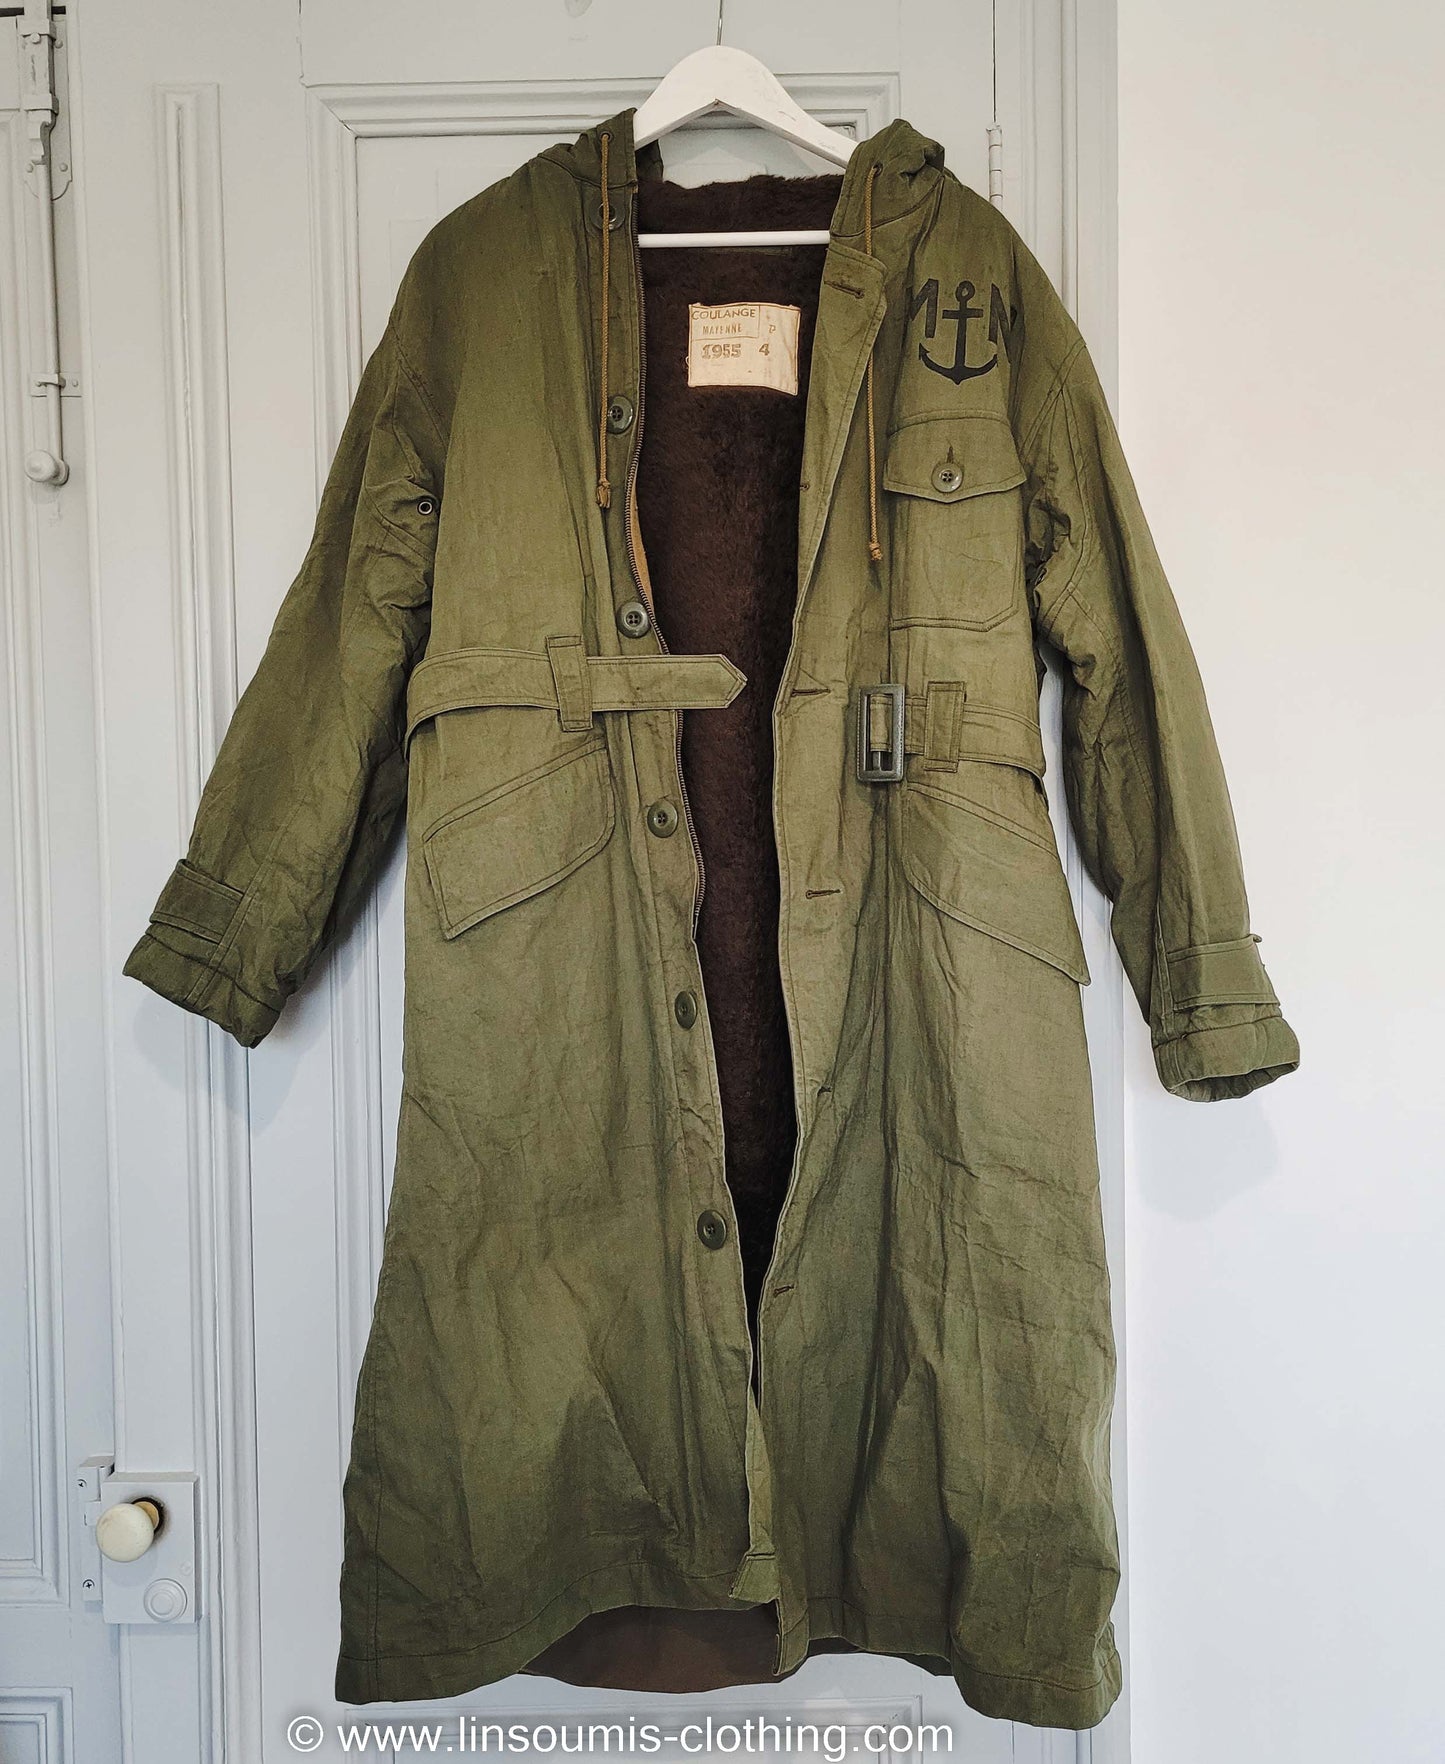 Rare NOS deadstock french navy coat like long N1 deck jacket / rare deadstock manteau de quart de la Marine nationale